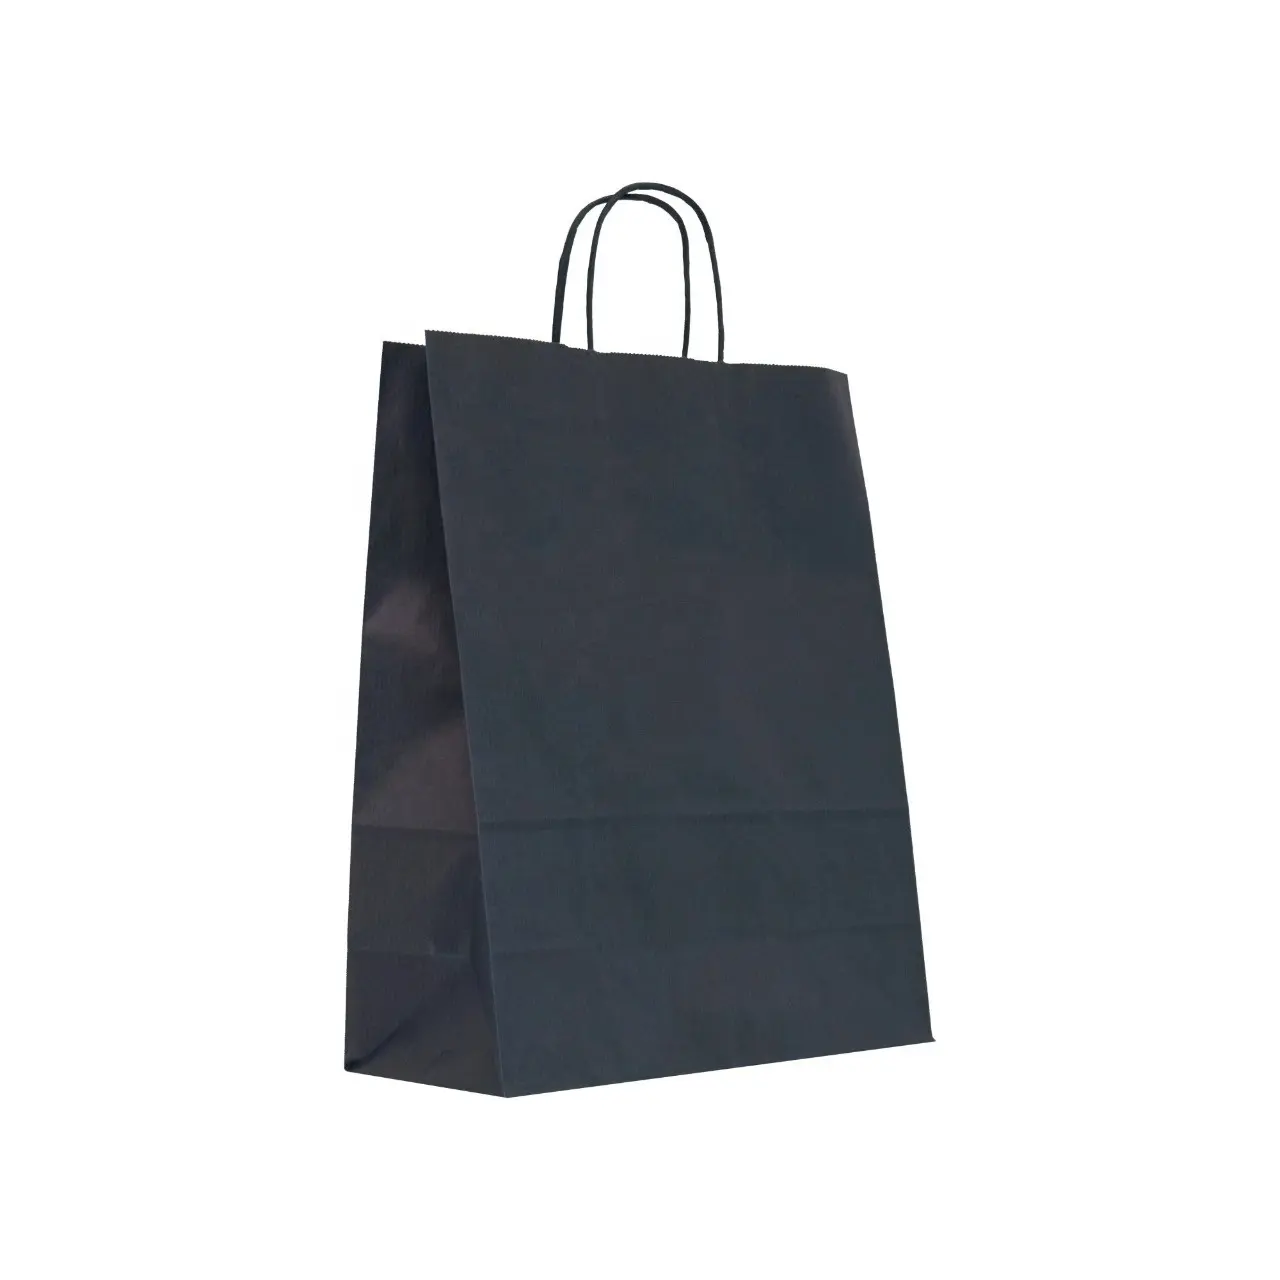 प्रीमियम कस्टम पैकेजिंग बैग डिज़ाइन क्राफ्ट शॉपिंग पेपर बैग थोक विक्रेताओं के लिए कस्टम क्राफ्ट औद्योगिक पैकेजिंग